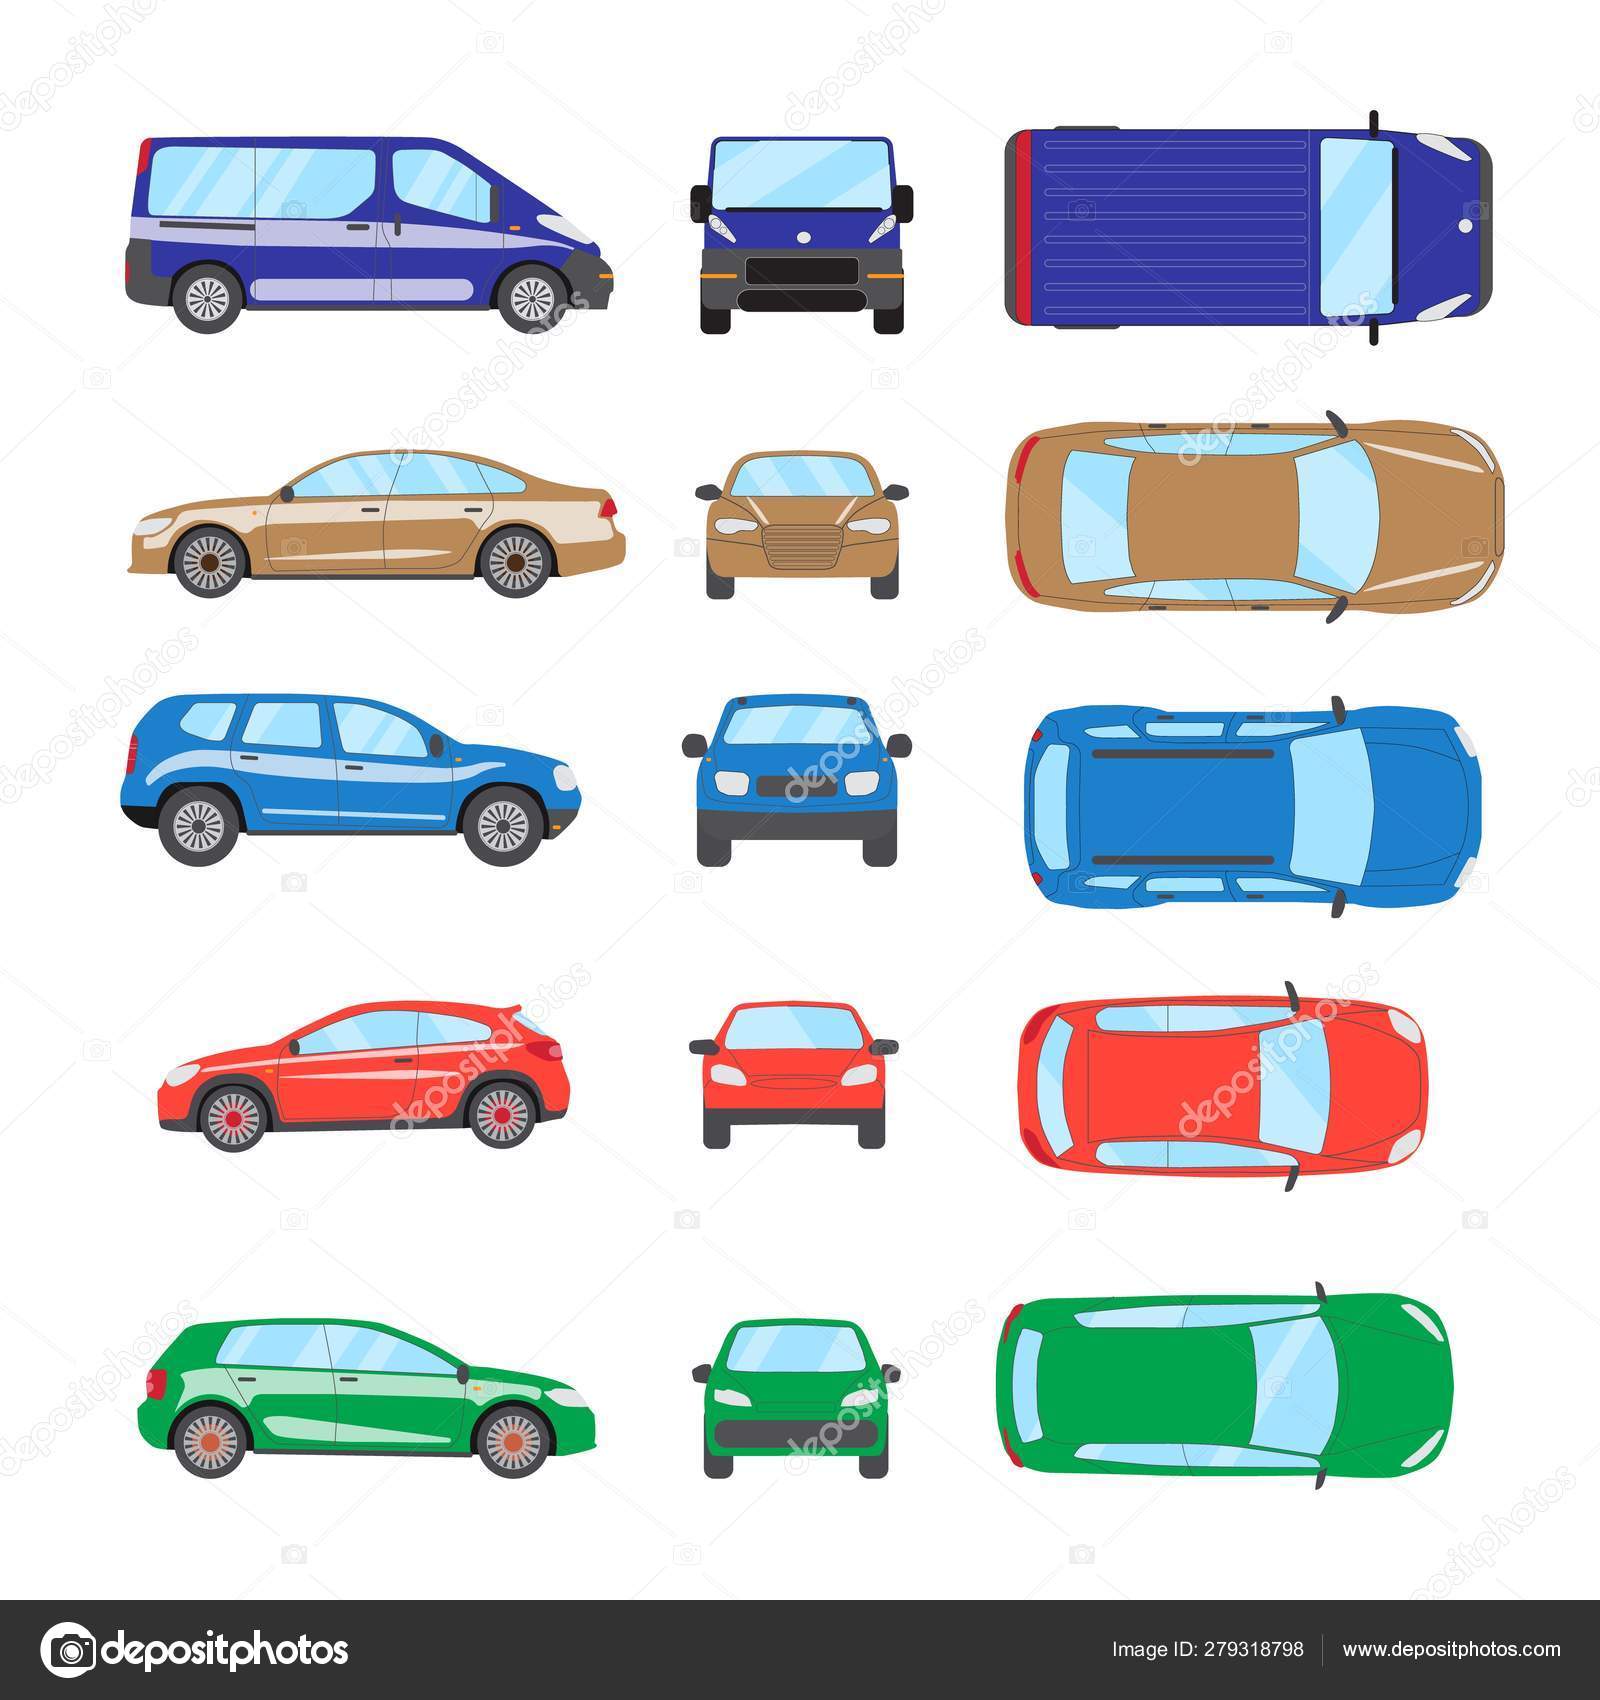 https://st4.depositphotos.com/3215151/27931/v/1600/depositphotos_279318798-stock-illustration-different-transportation-car-sedan-car.jpg